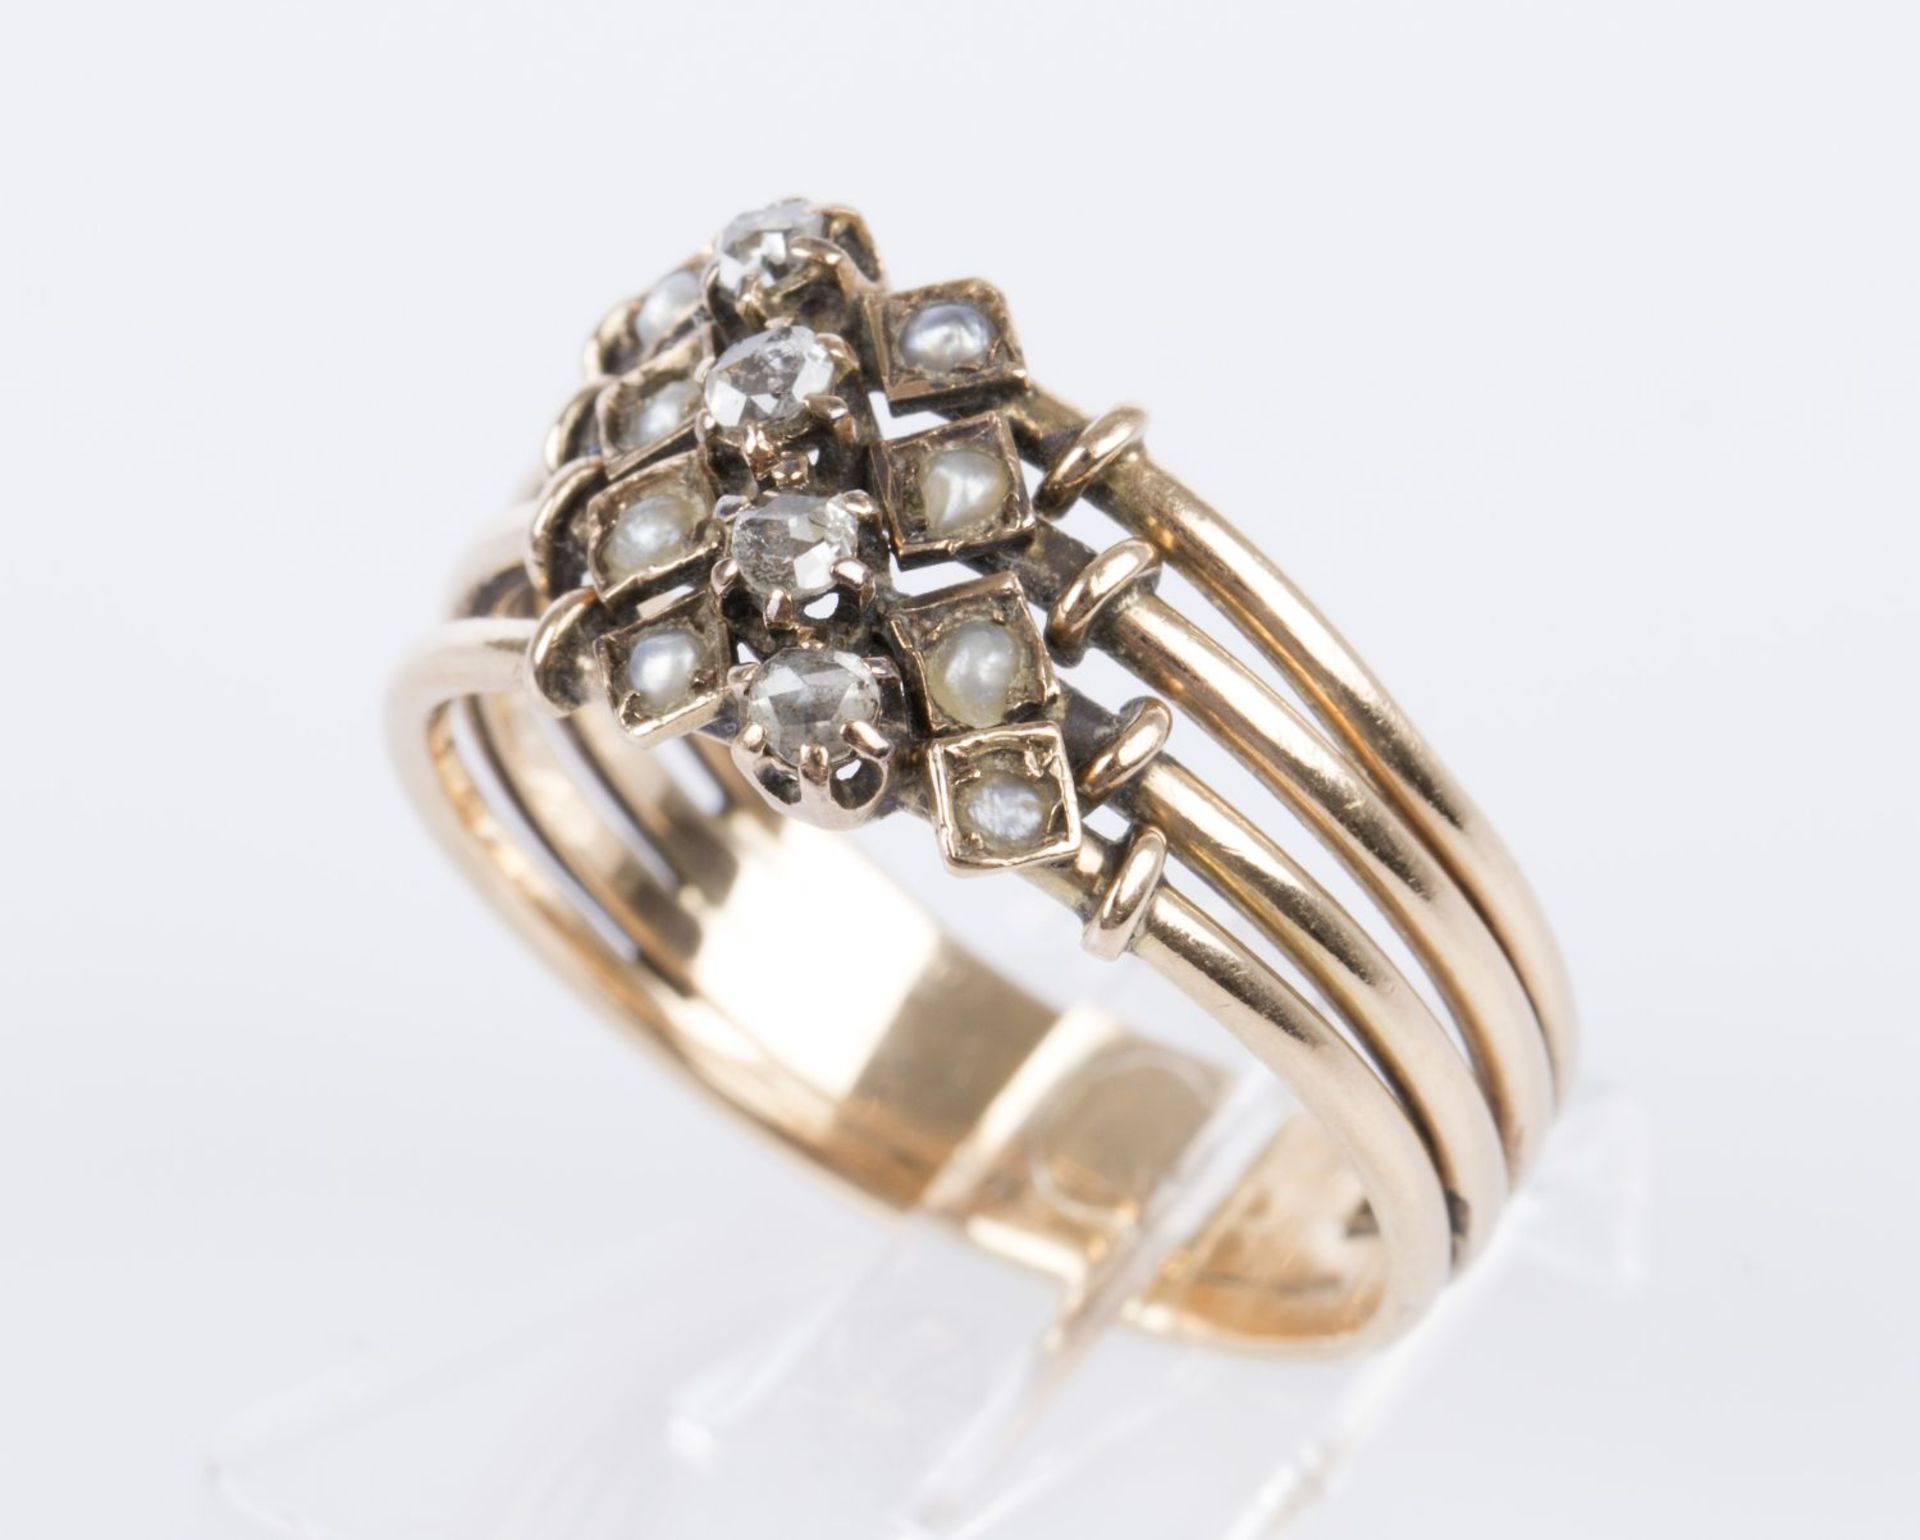 Diamant-Perlring Gelbgold 585. Ausgefasst mit kleinen Perlen und Dia.-Rosen. RG 56. Ca. 4,3 g.